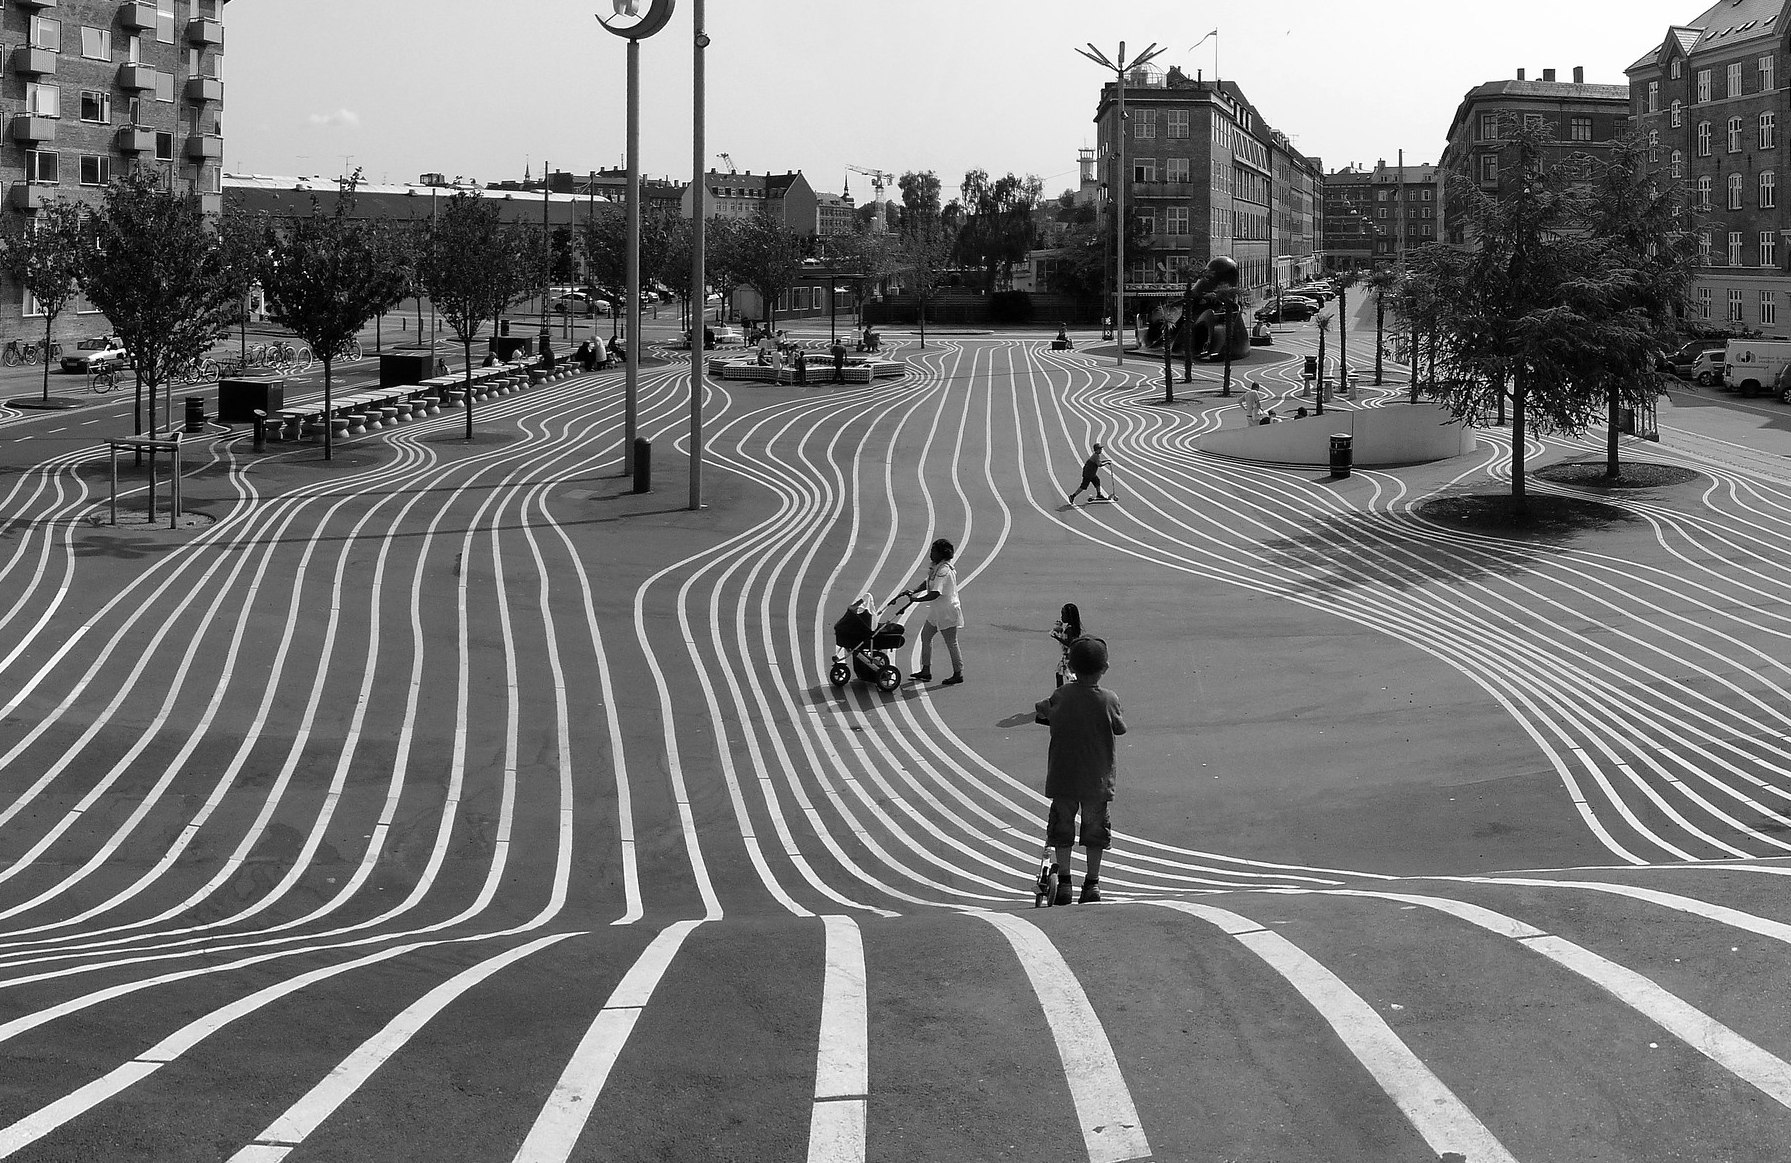 Et DIY sort/hvid foto af en gade med stribede linjer i København.